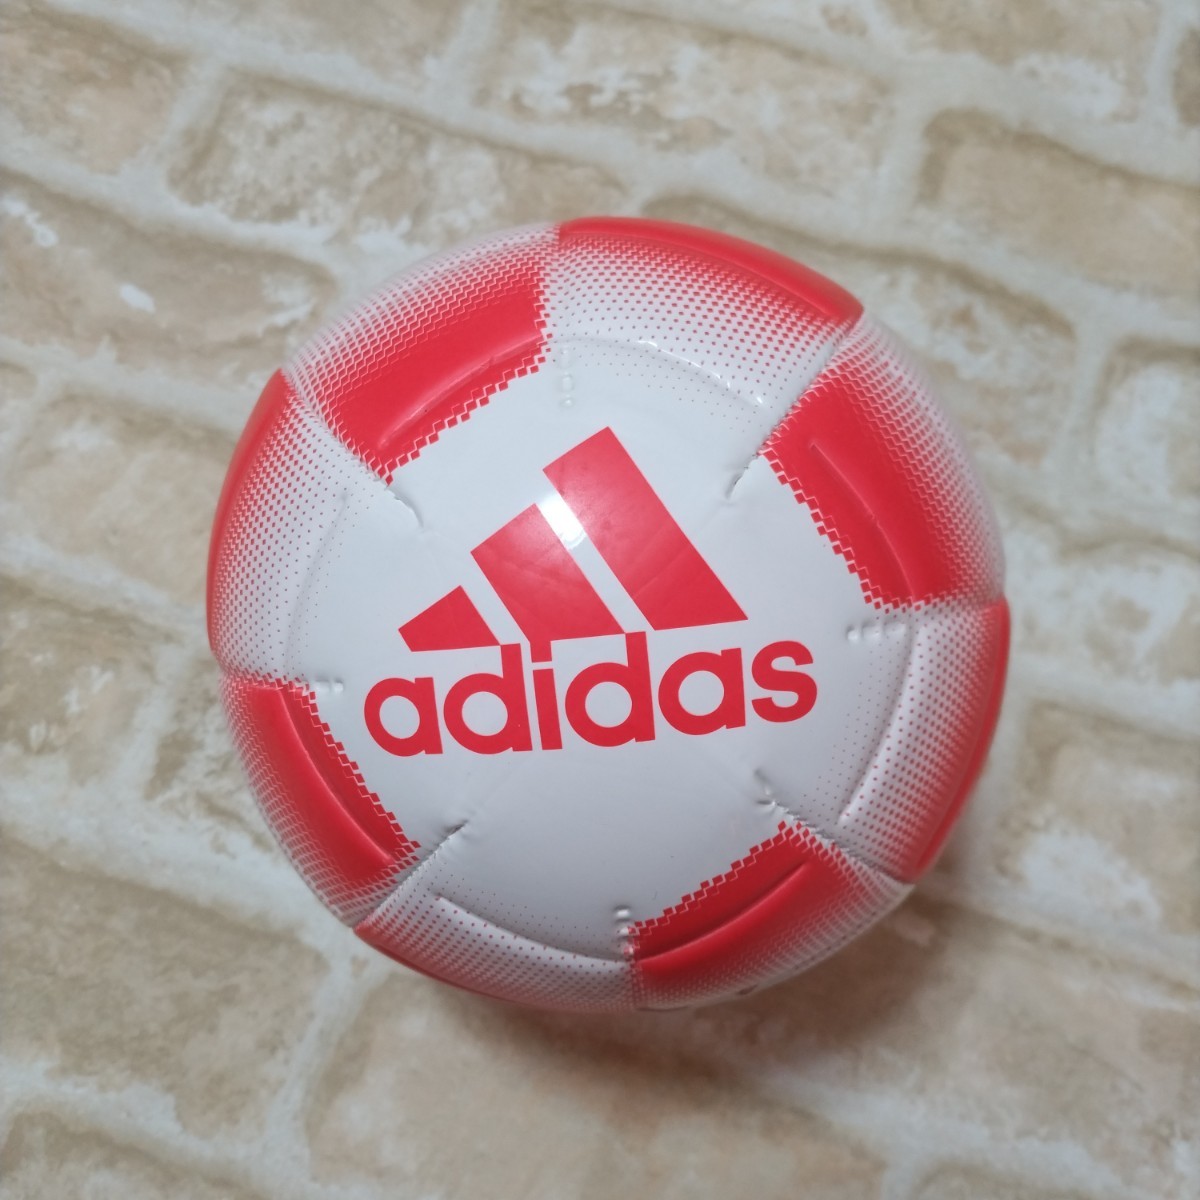 adidas Adidas футбольный мяч 3 номер лампочка бесплатная доставка 